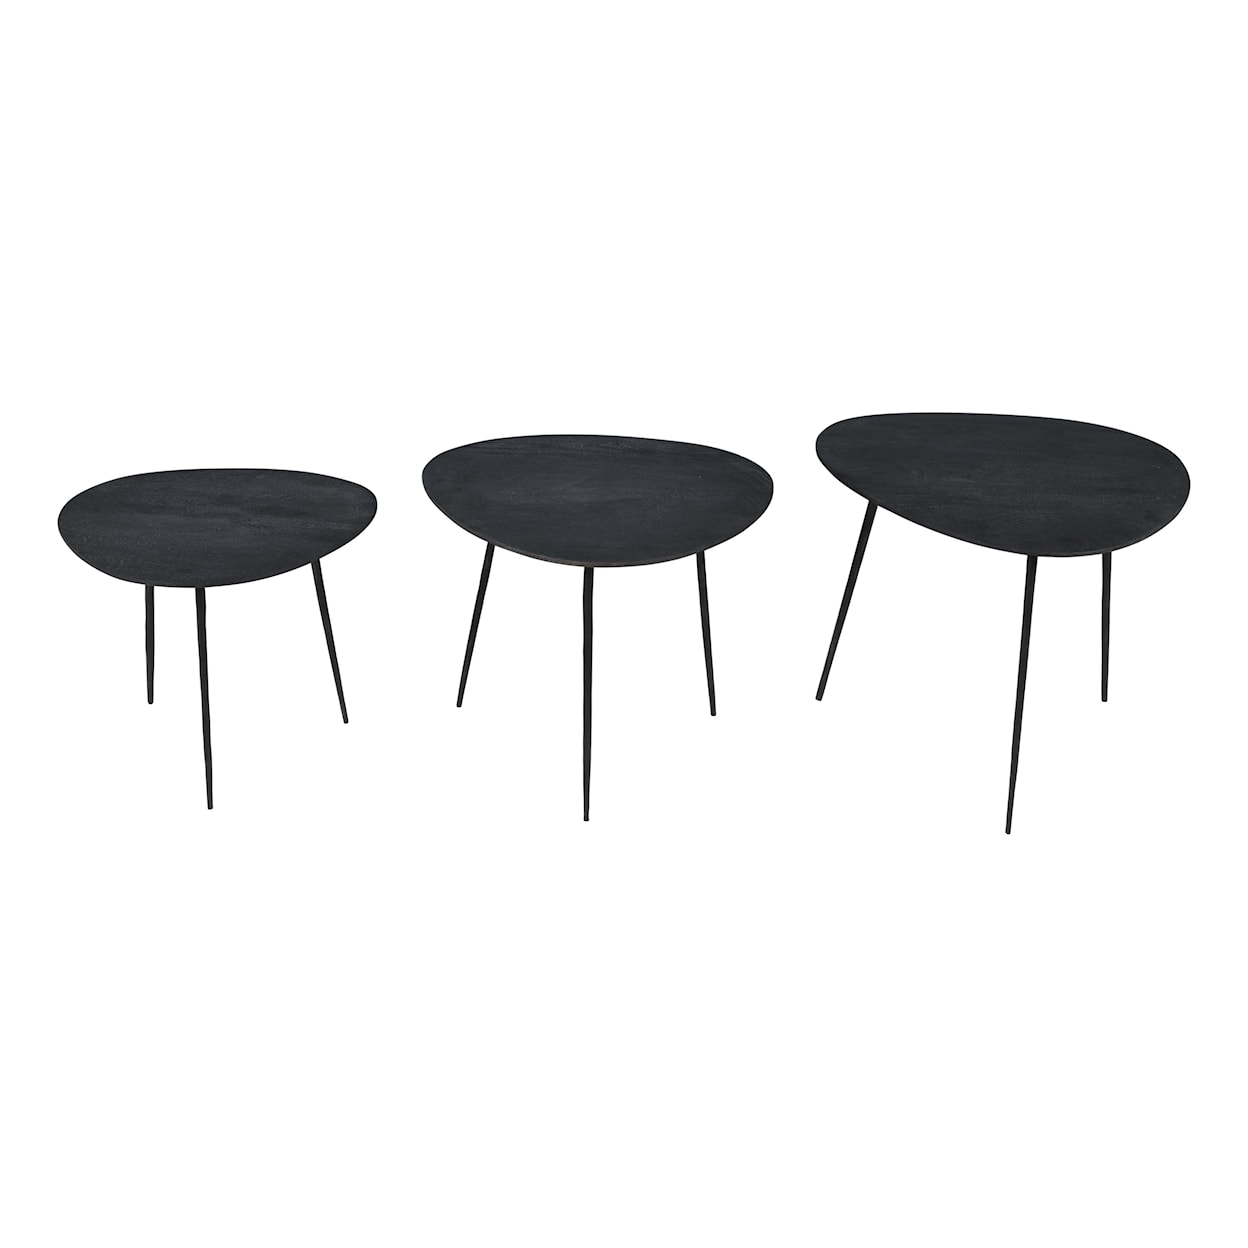 Jofran Reeves Nesting Table - Set of 3 - Black